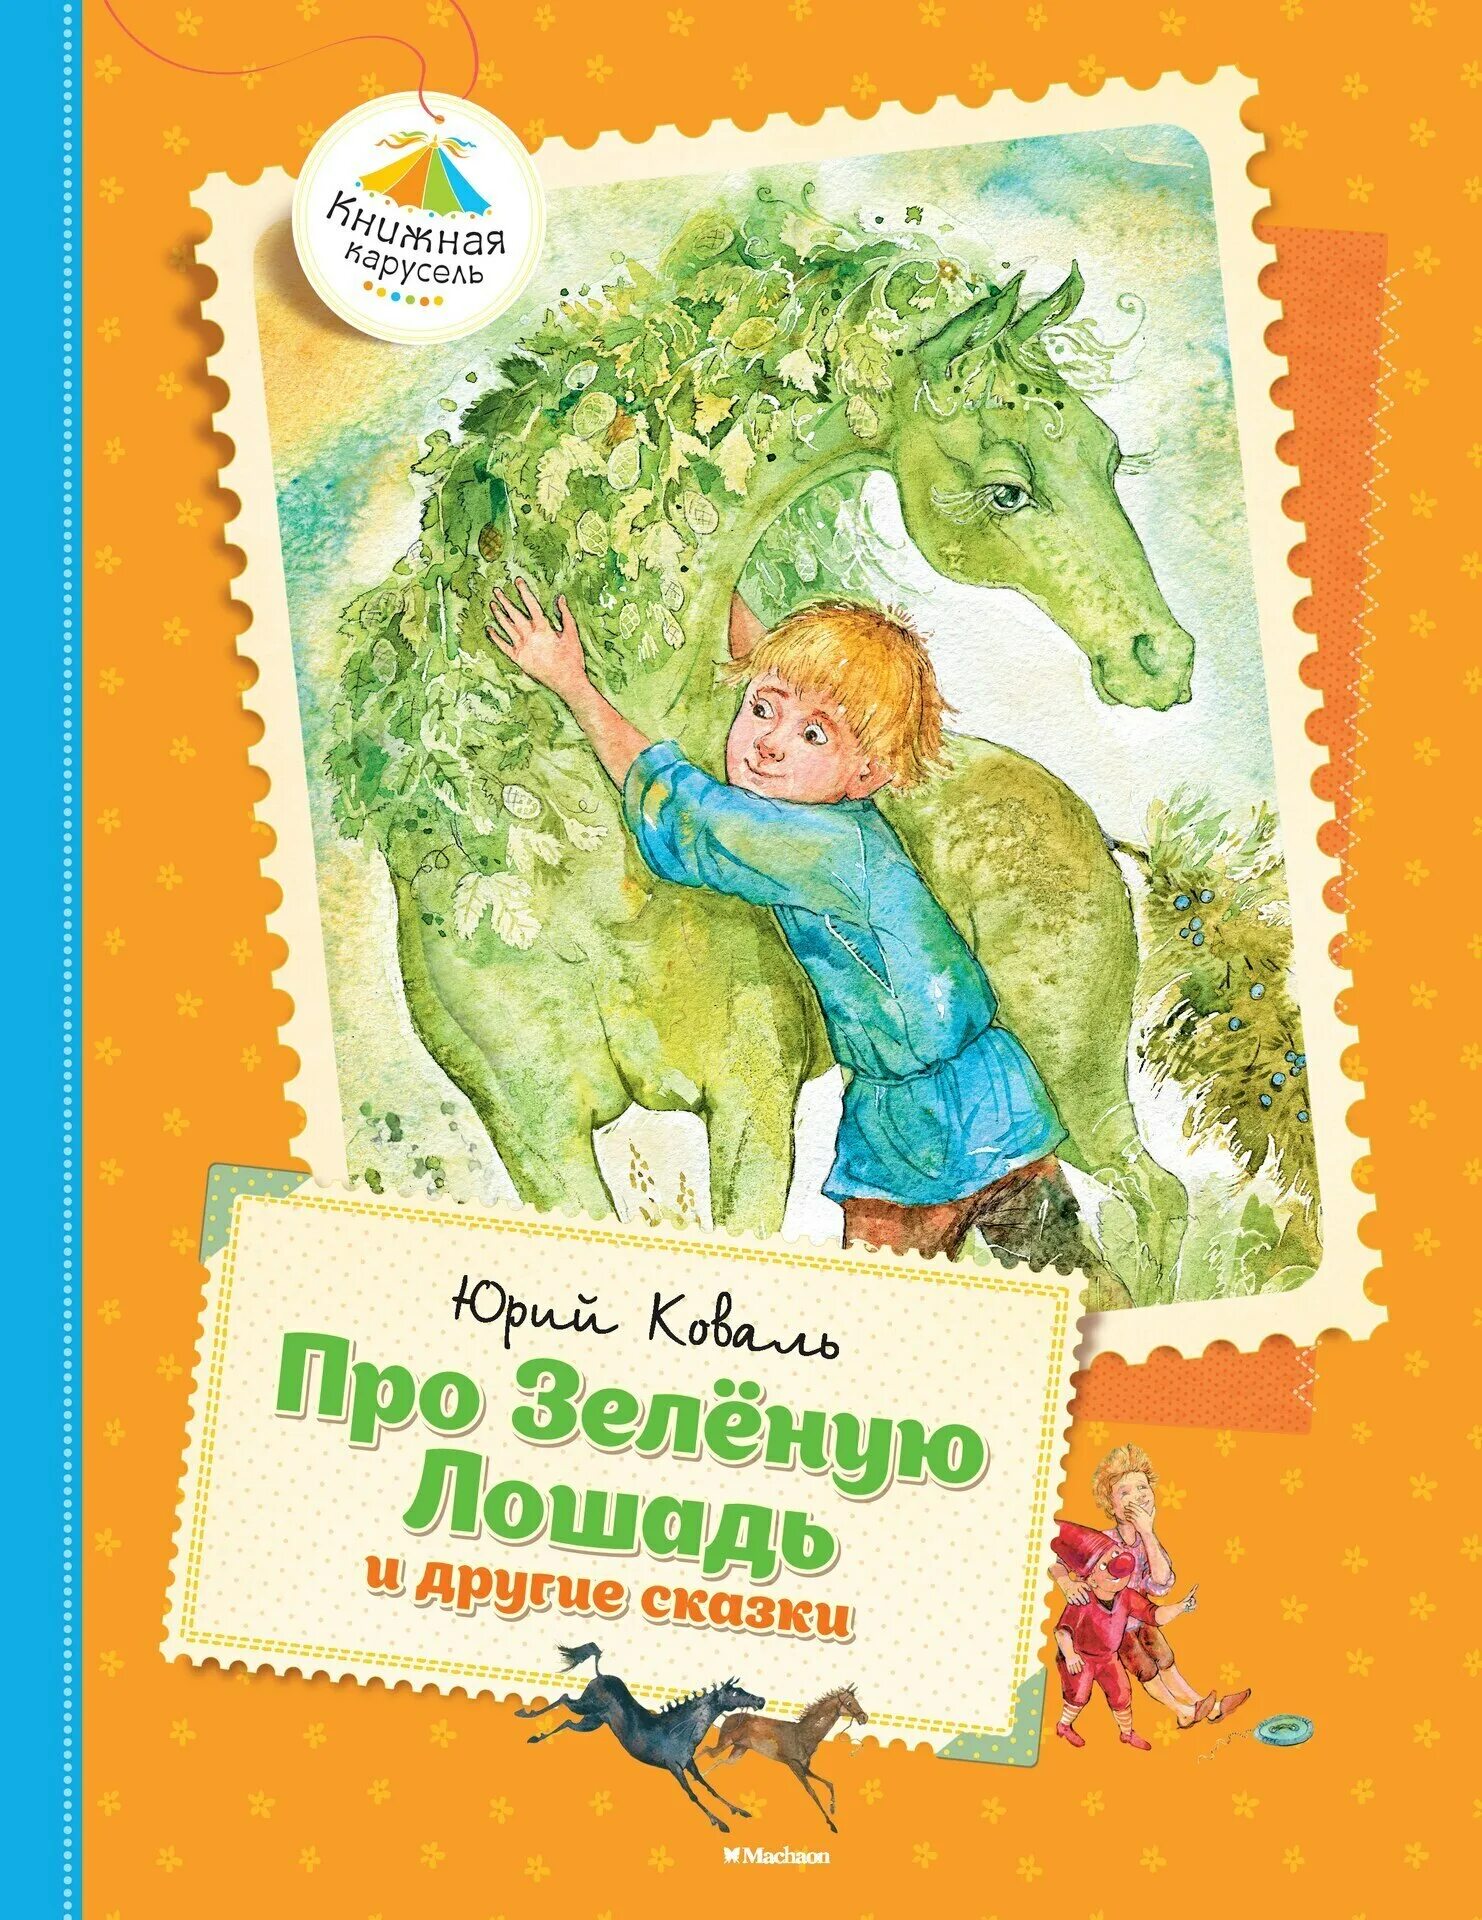 Книга Коваля про зеленую лошадь и другие сказки.